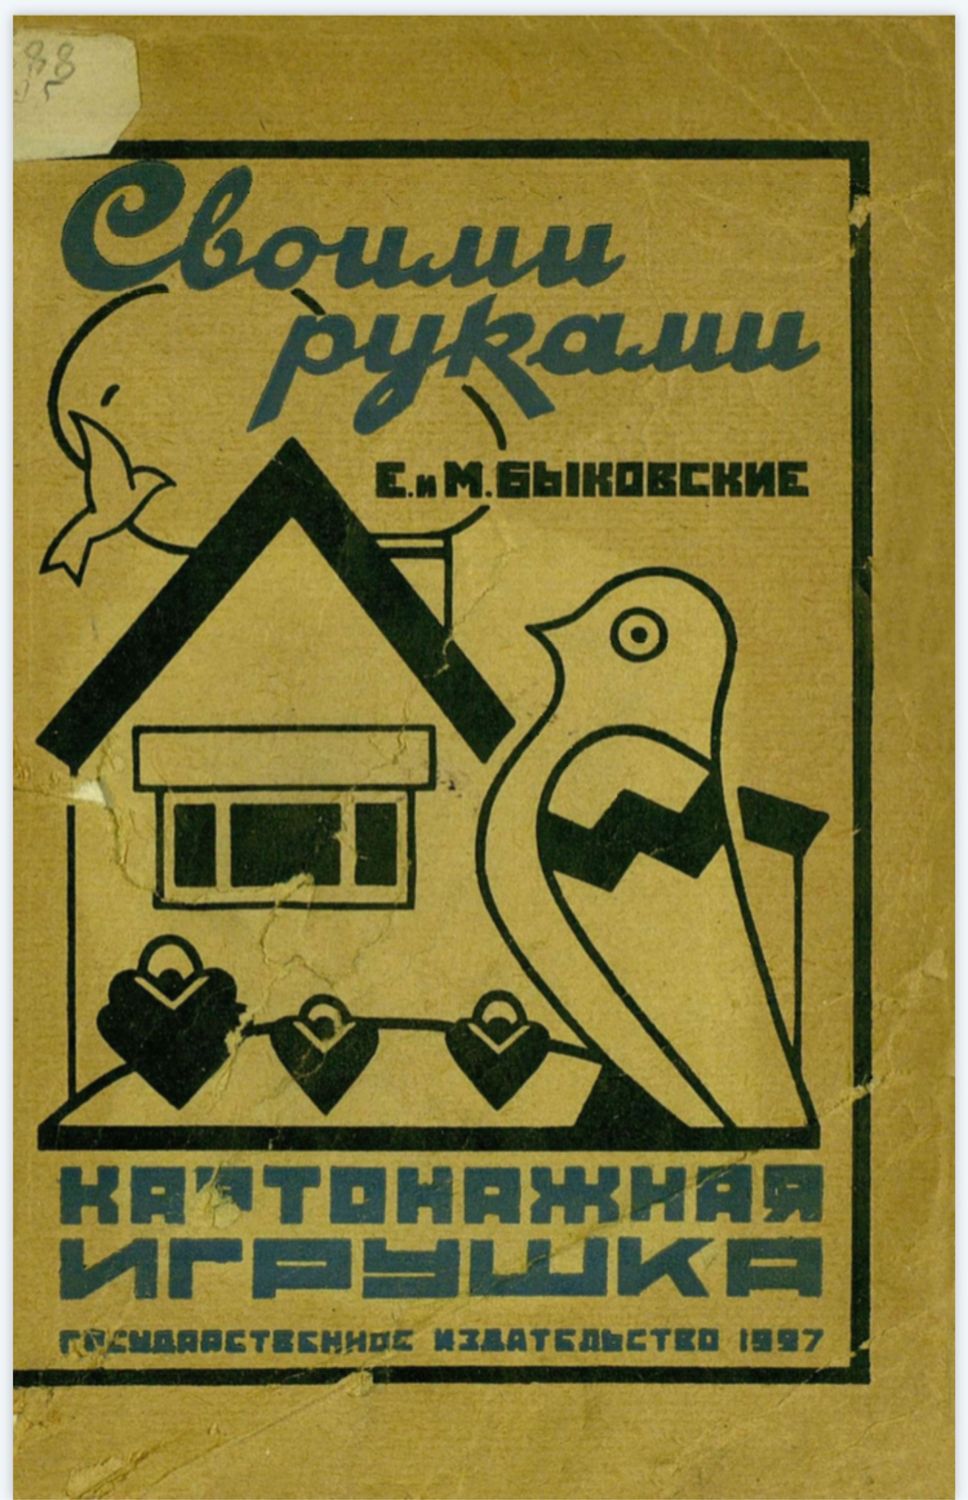 Быковские е. и м. картонажная игрушка 1927. СССР